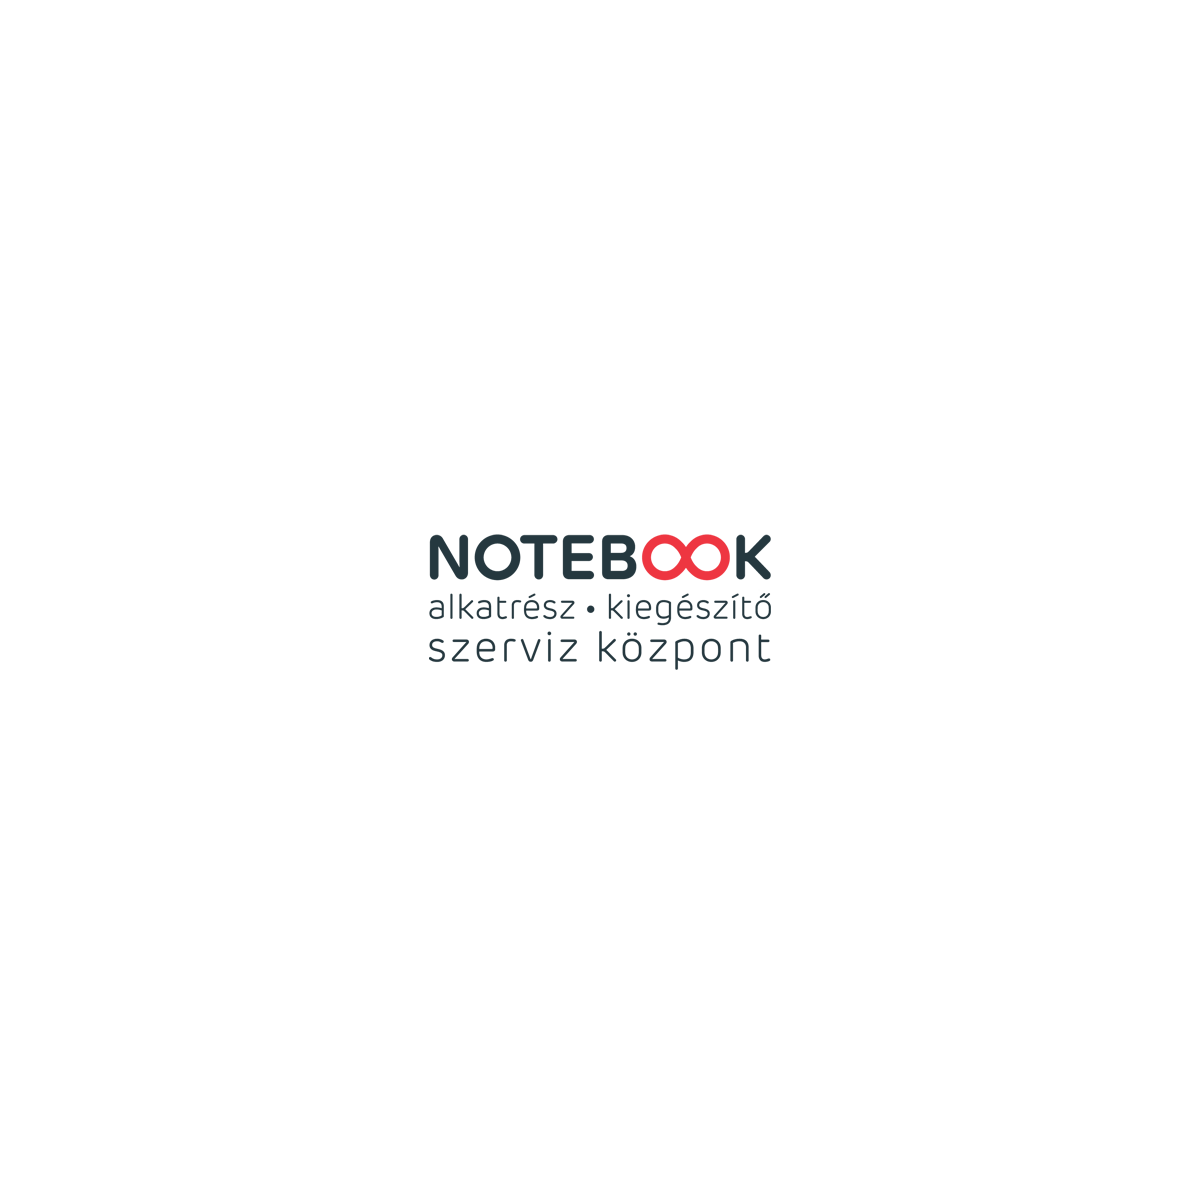  Notebook-alkatresz.hu Kuponkódok